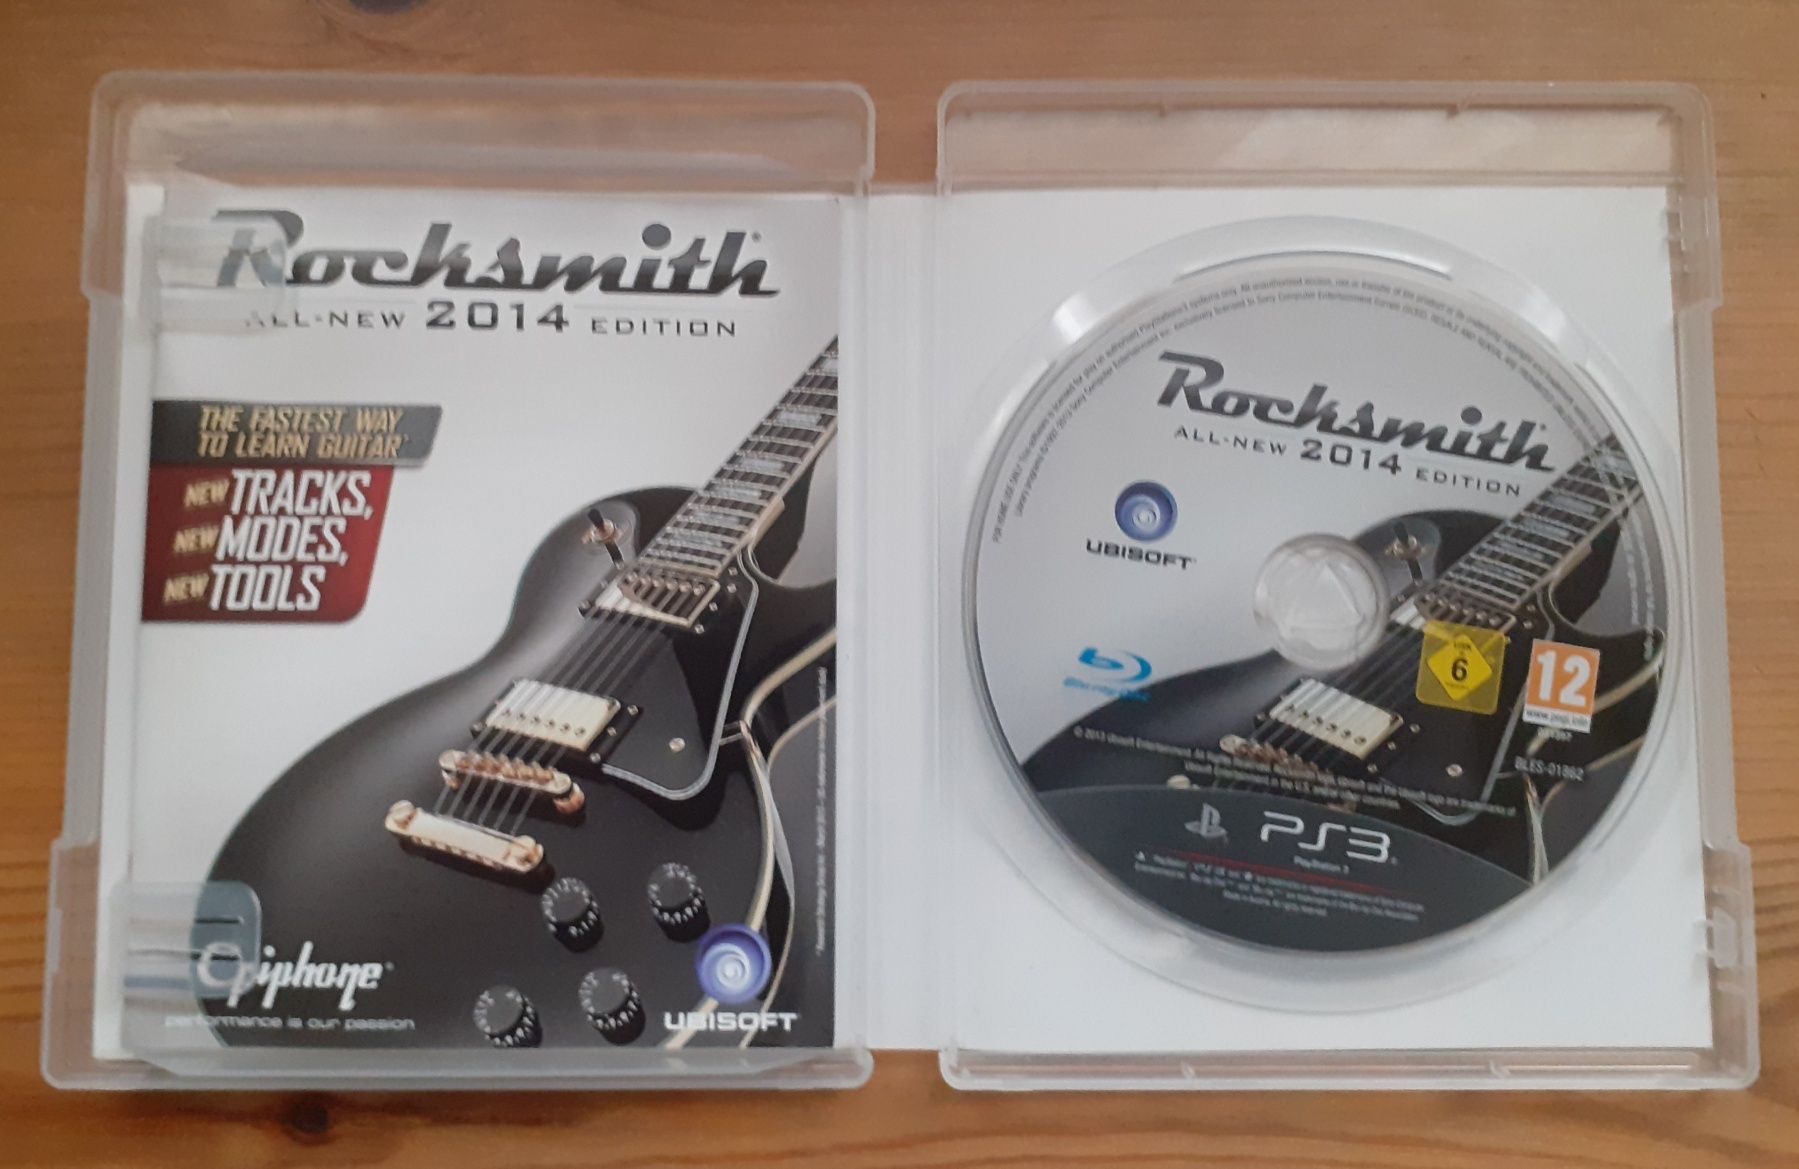 Rocksmith - All new 2014 Edition - Gra na PS3